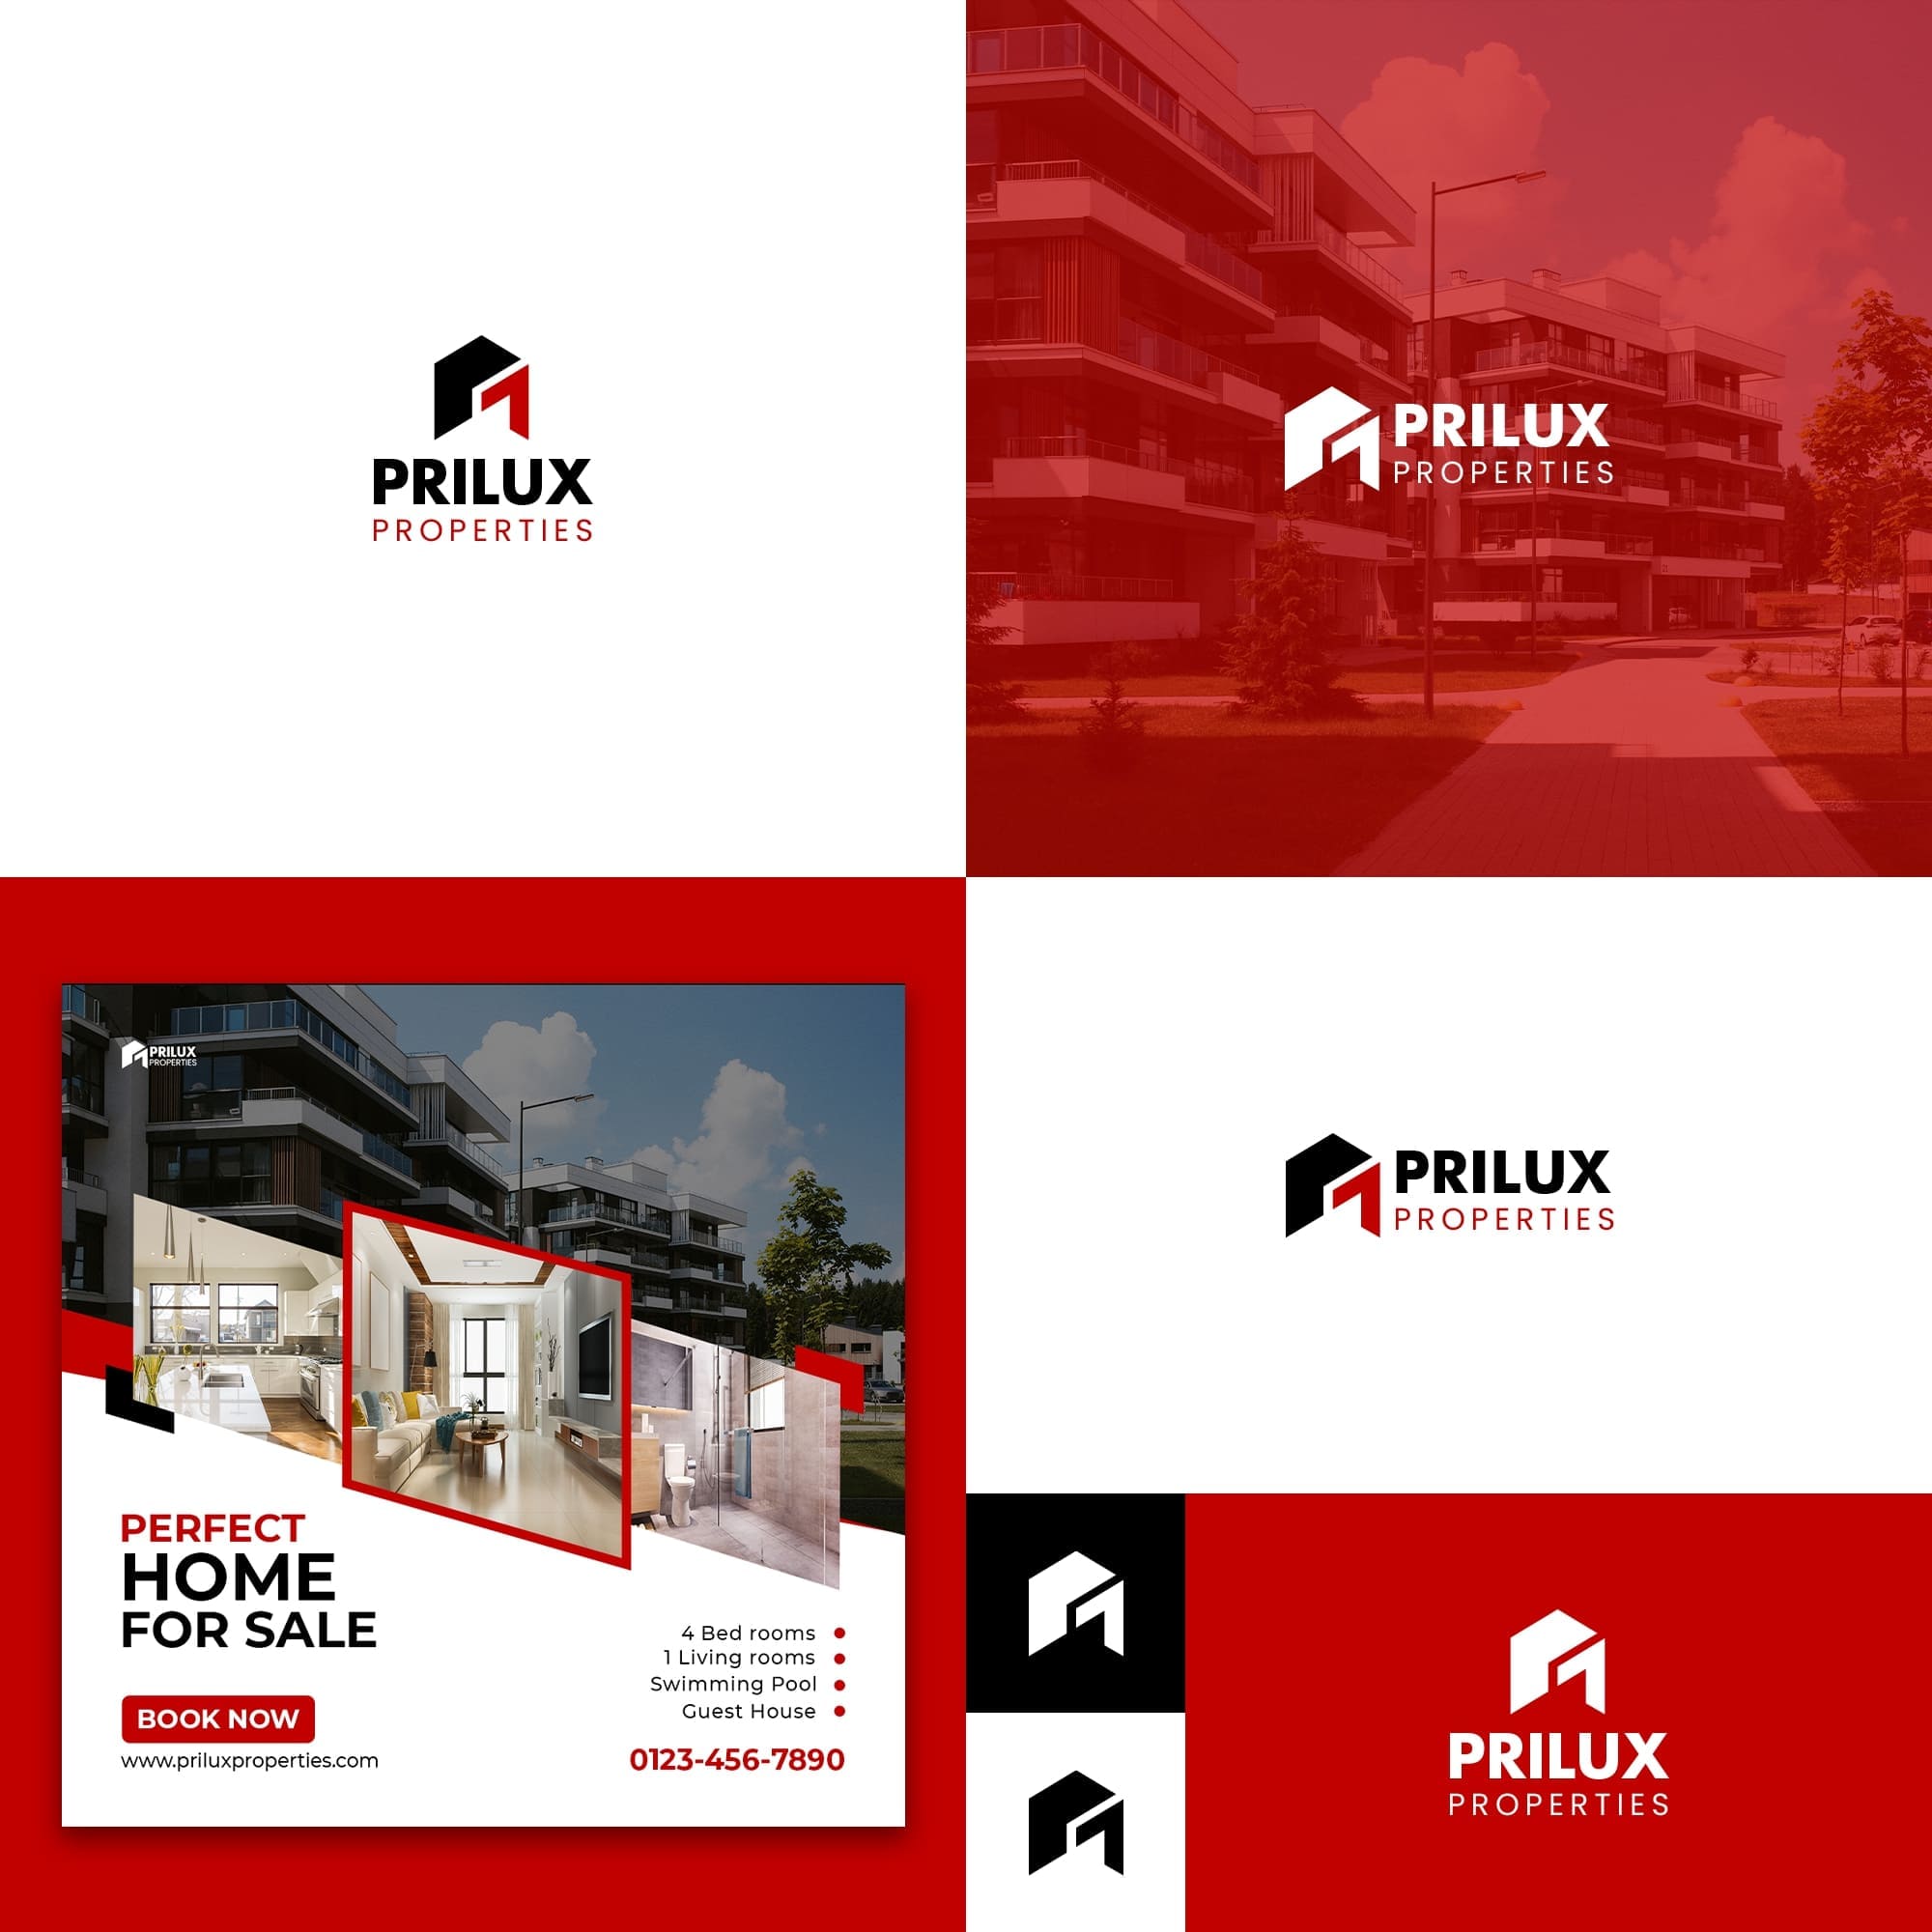 PriLux Properties